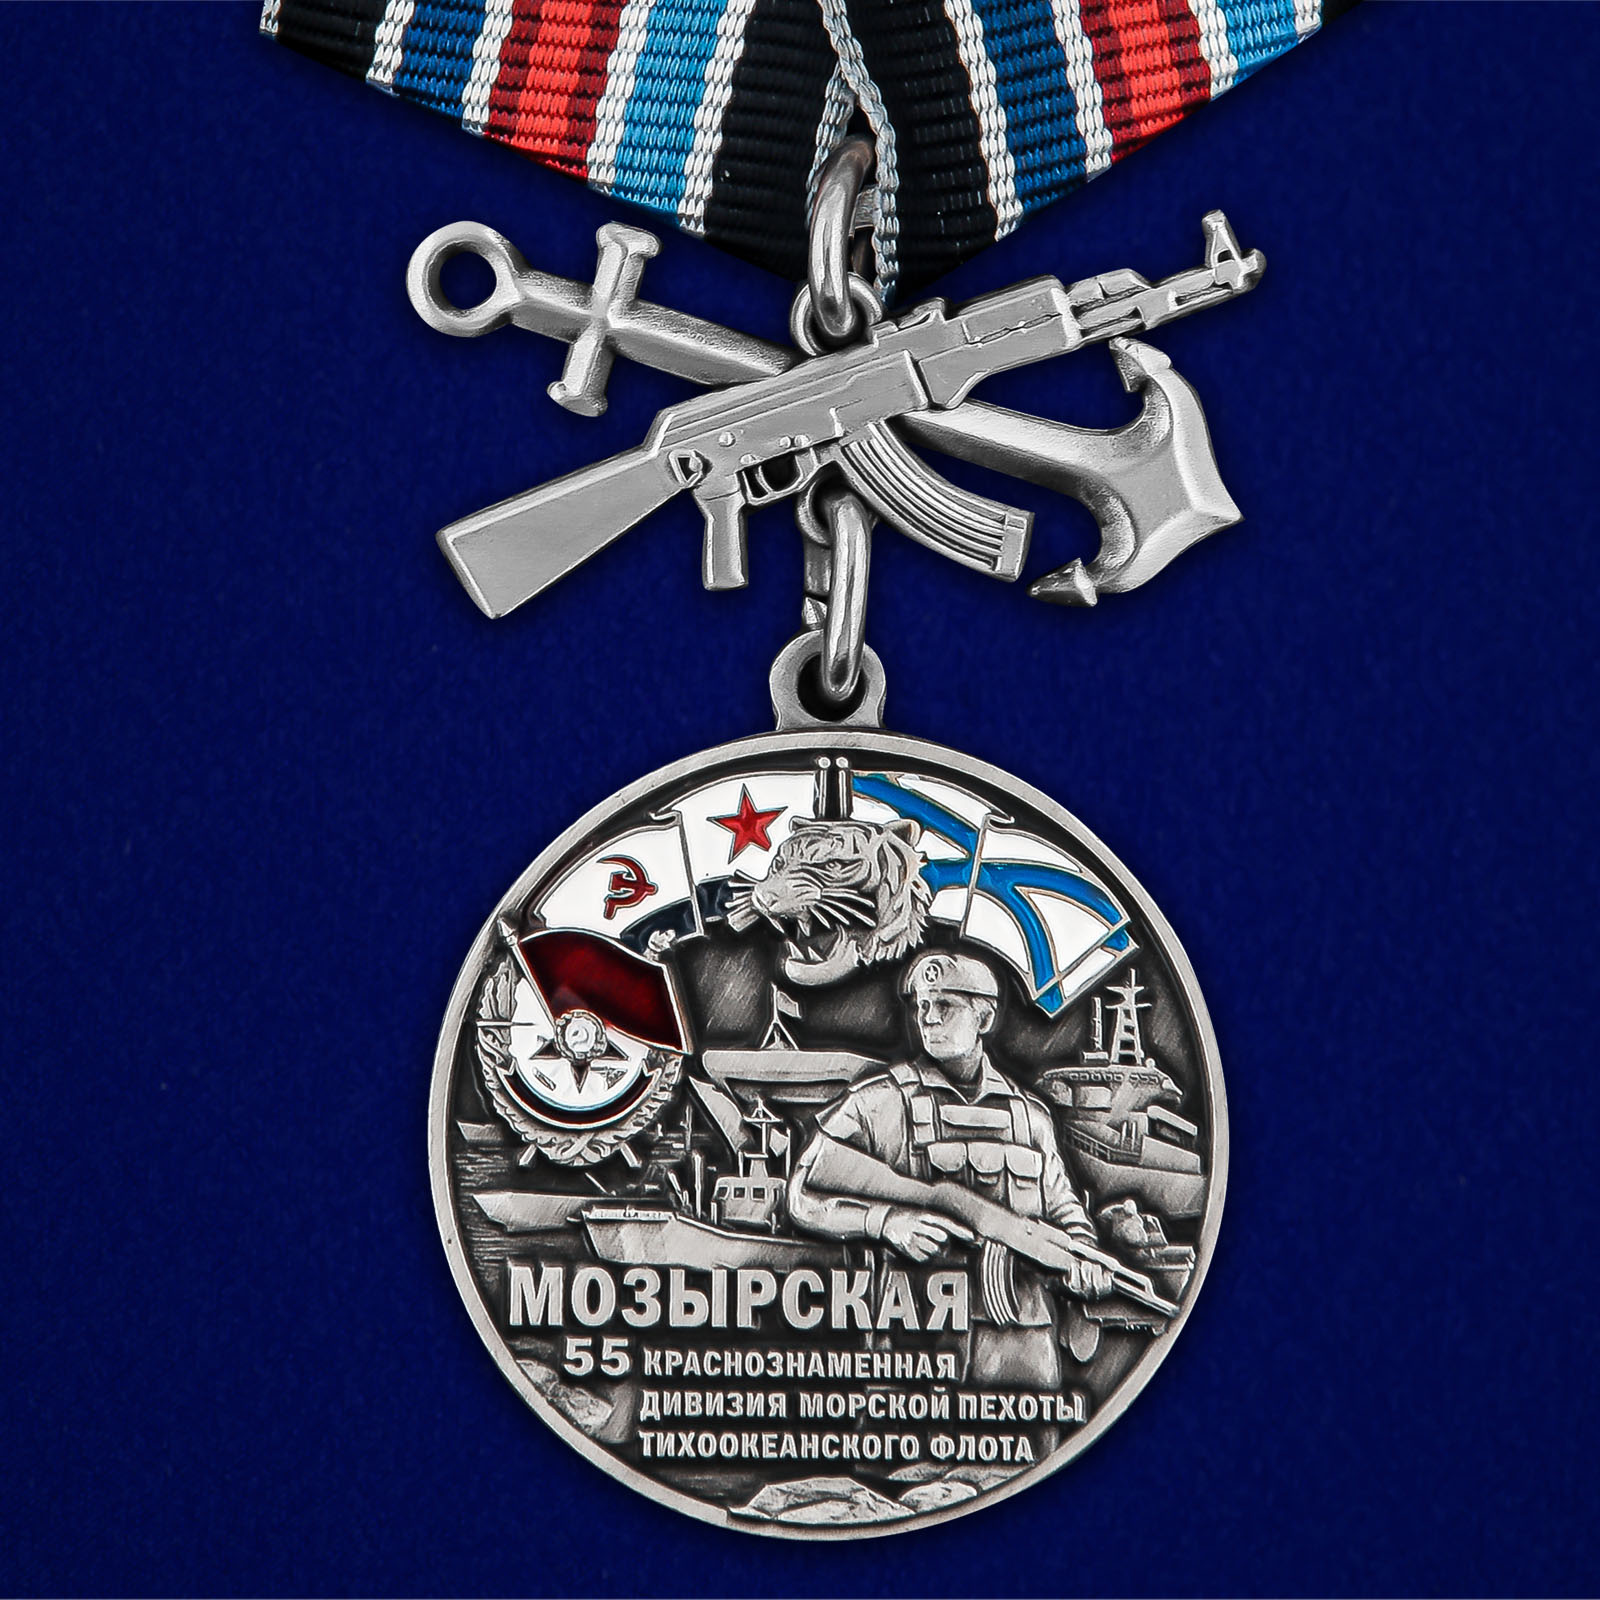 Купить медаль 55-я Мозырская Краснознамённая дивизия морской пехоты ТОФ выгодно